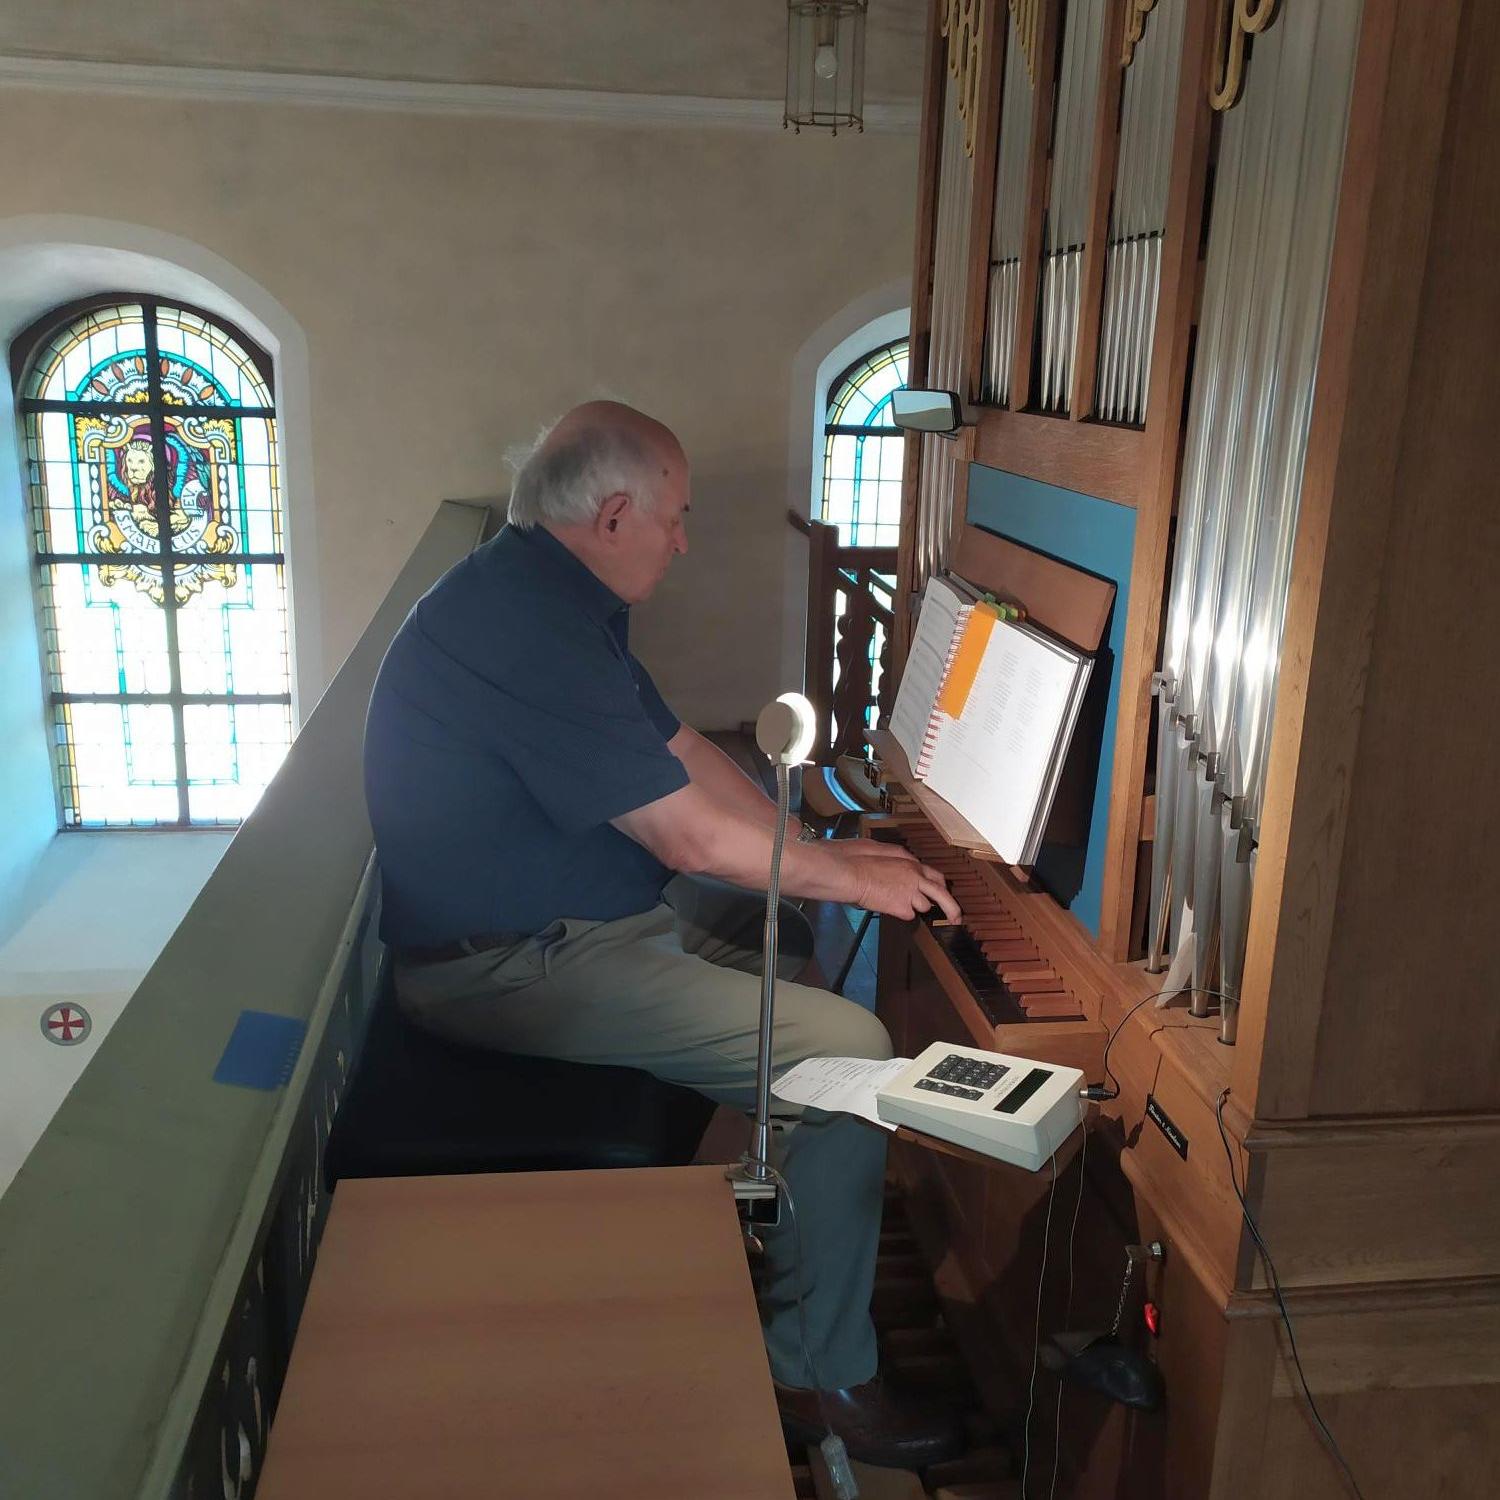 Franz Pokoj an seiner Orgel